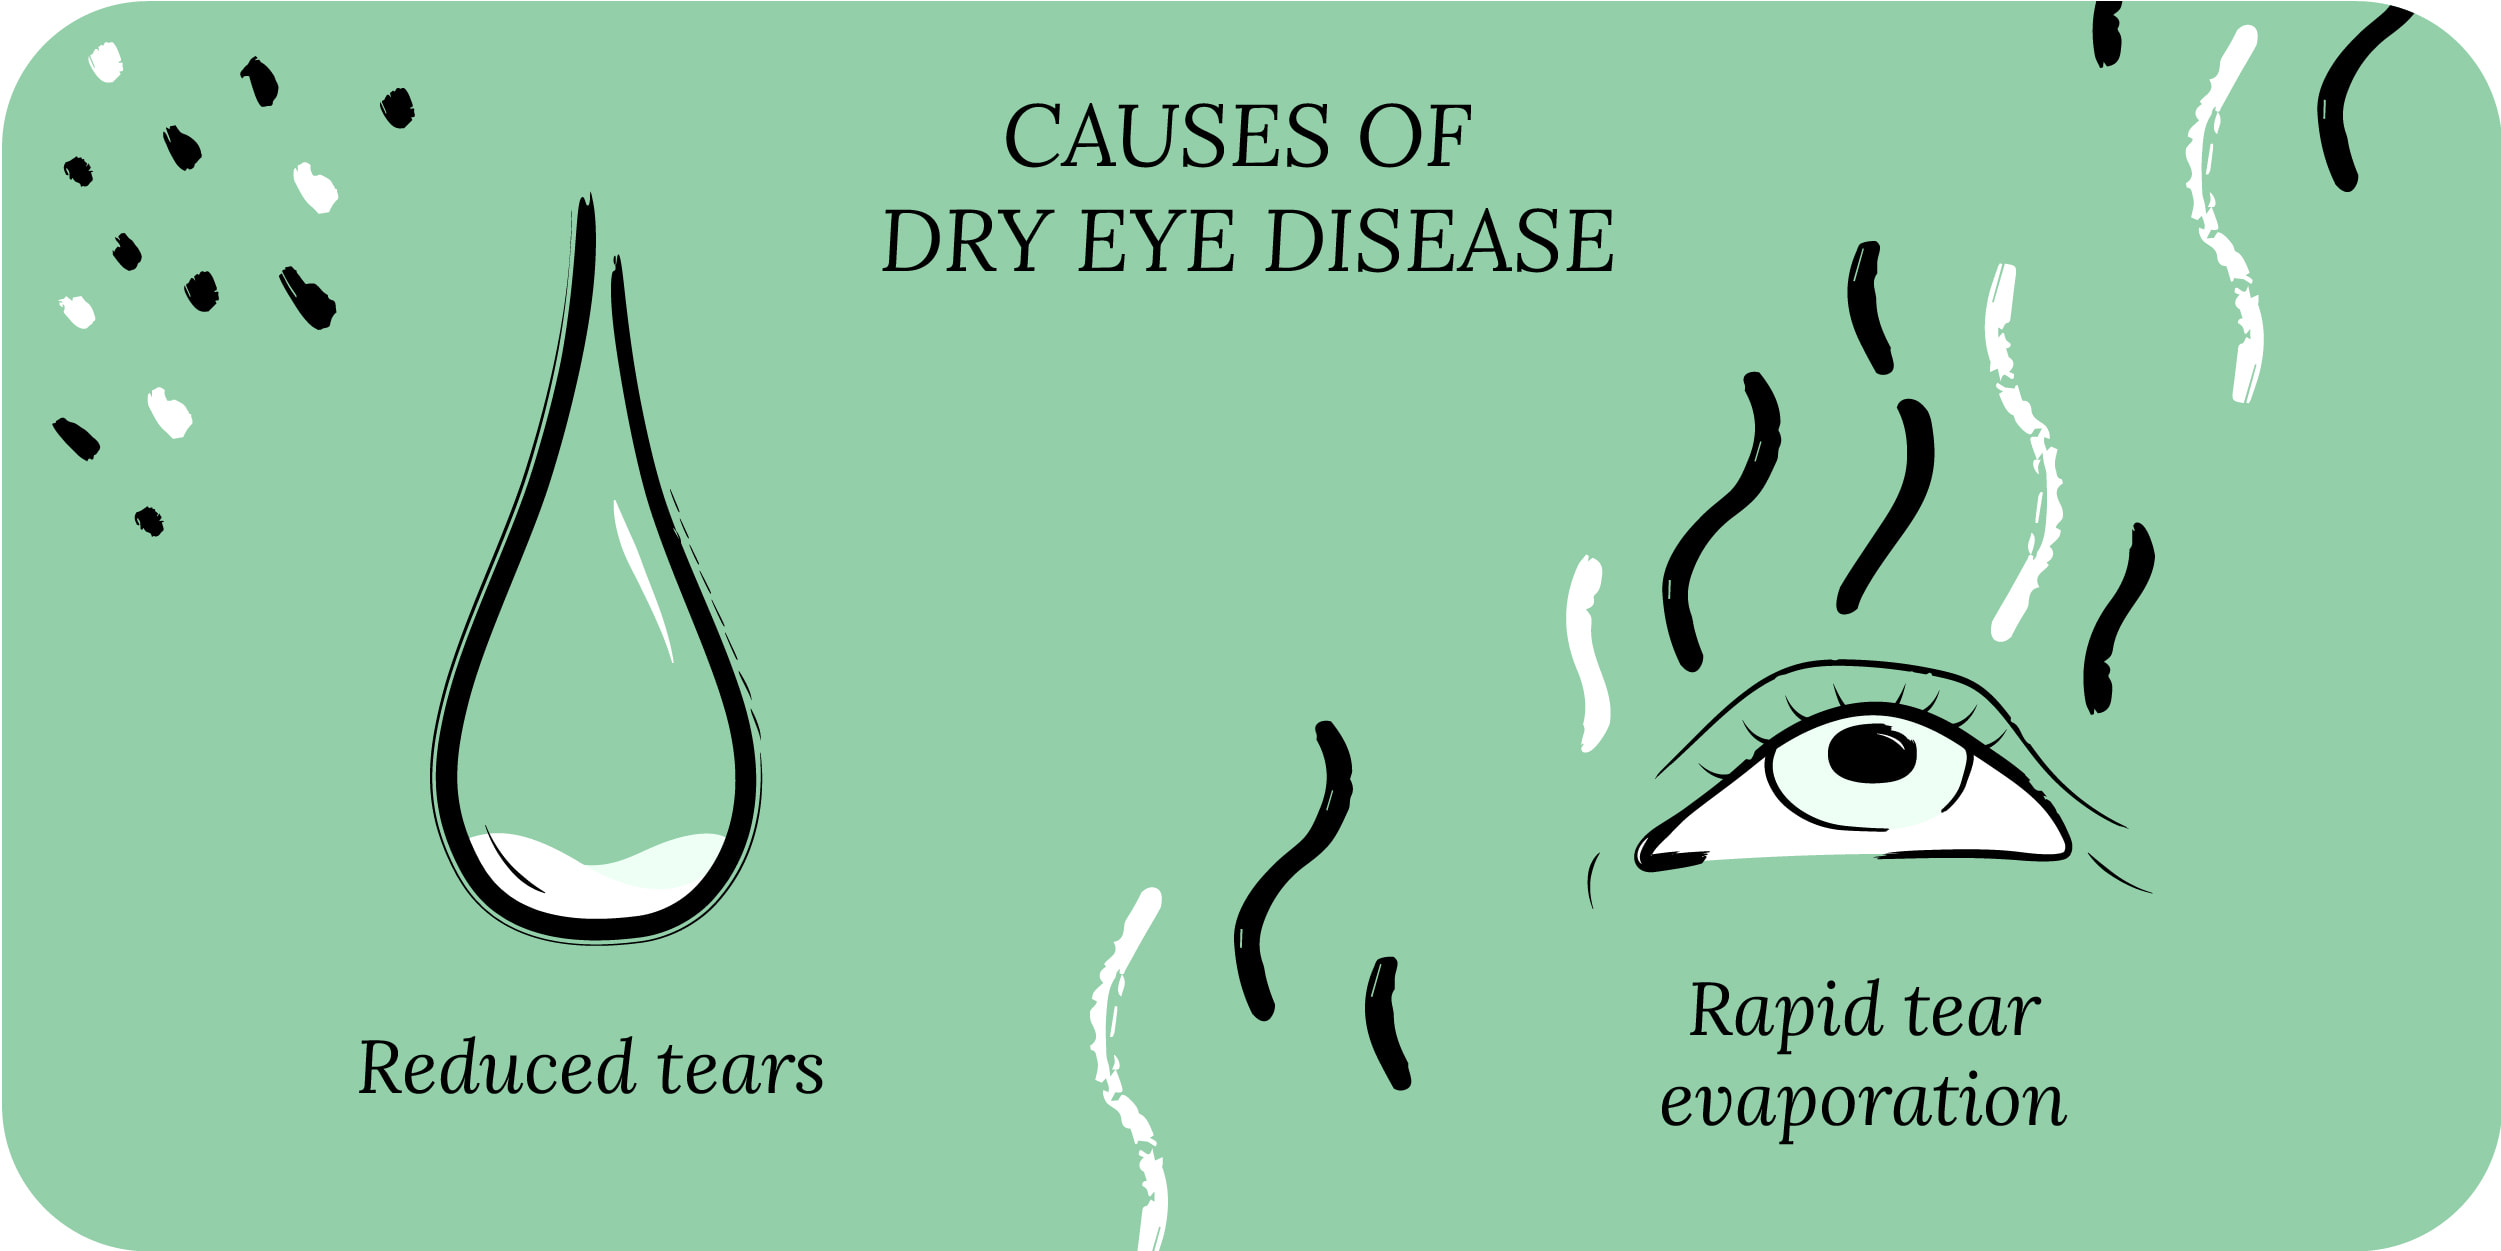 Causes of dry eye disease